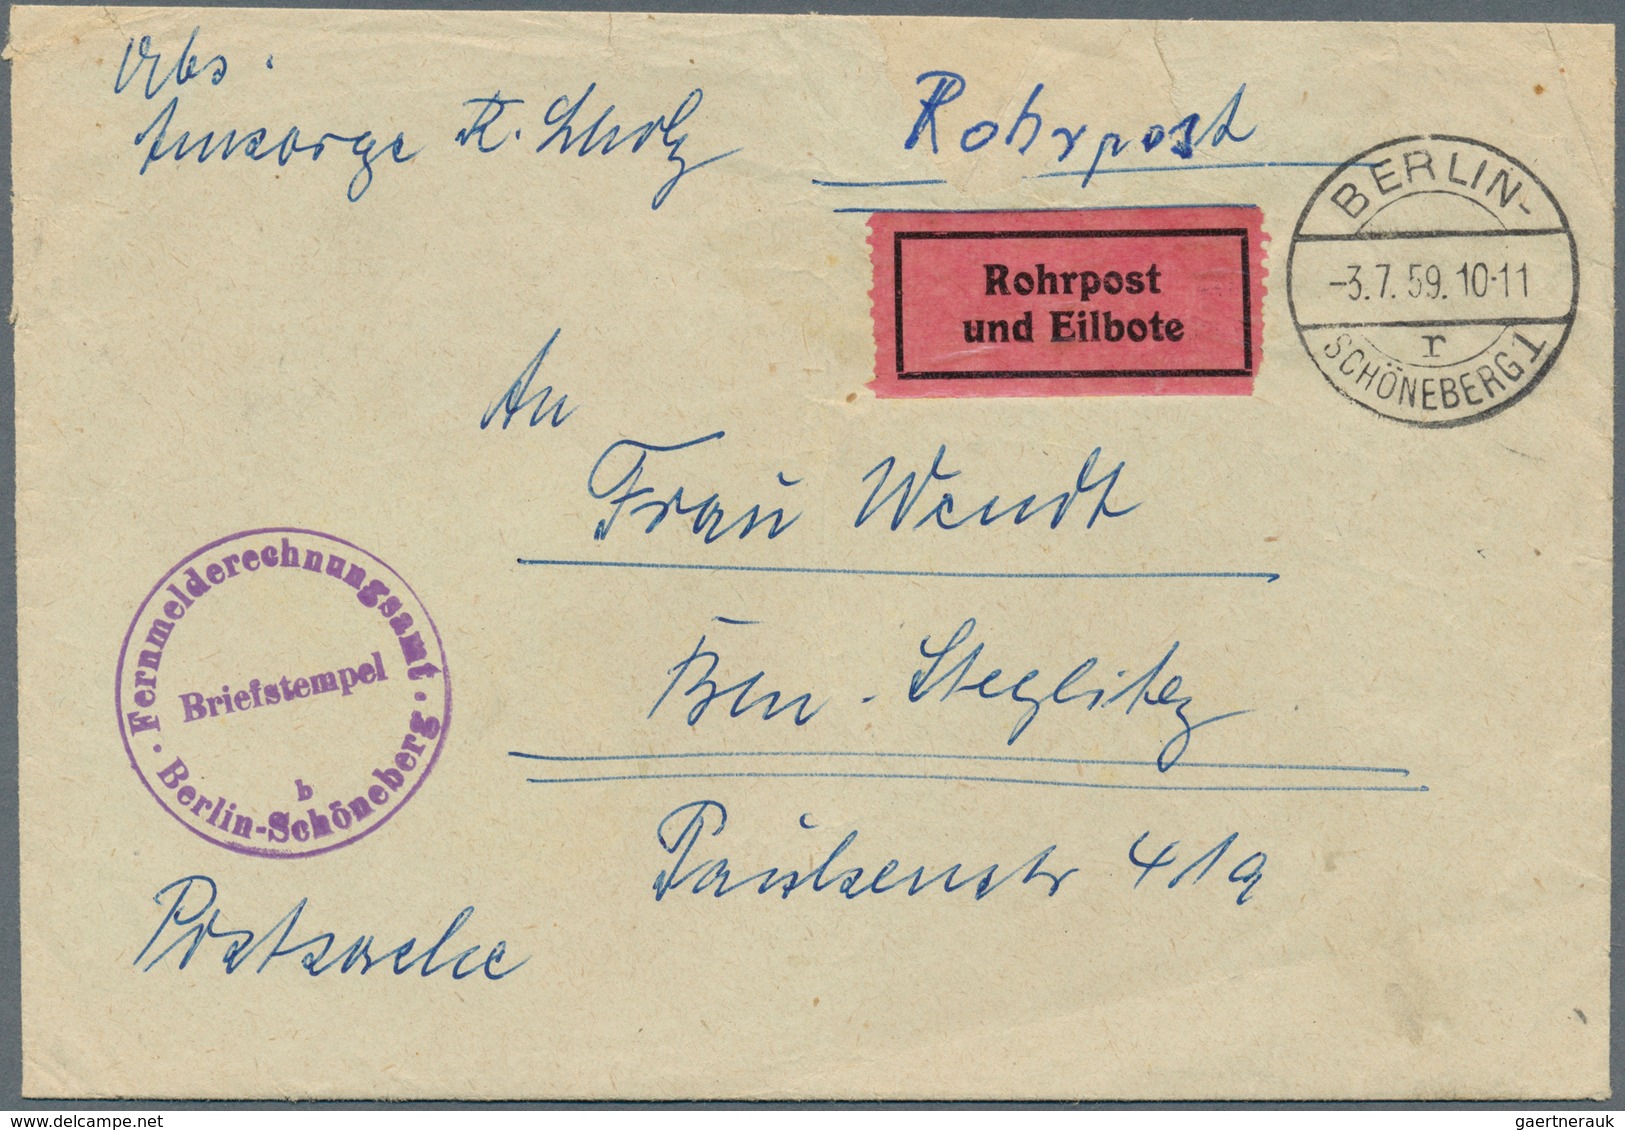 20641 Berlin - Postschnelldienst: 1959, Umschlag Postsache Gebührenfrei Als Rohrpost-Eilboten Schöneberg 1 - Covers & Documents